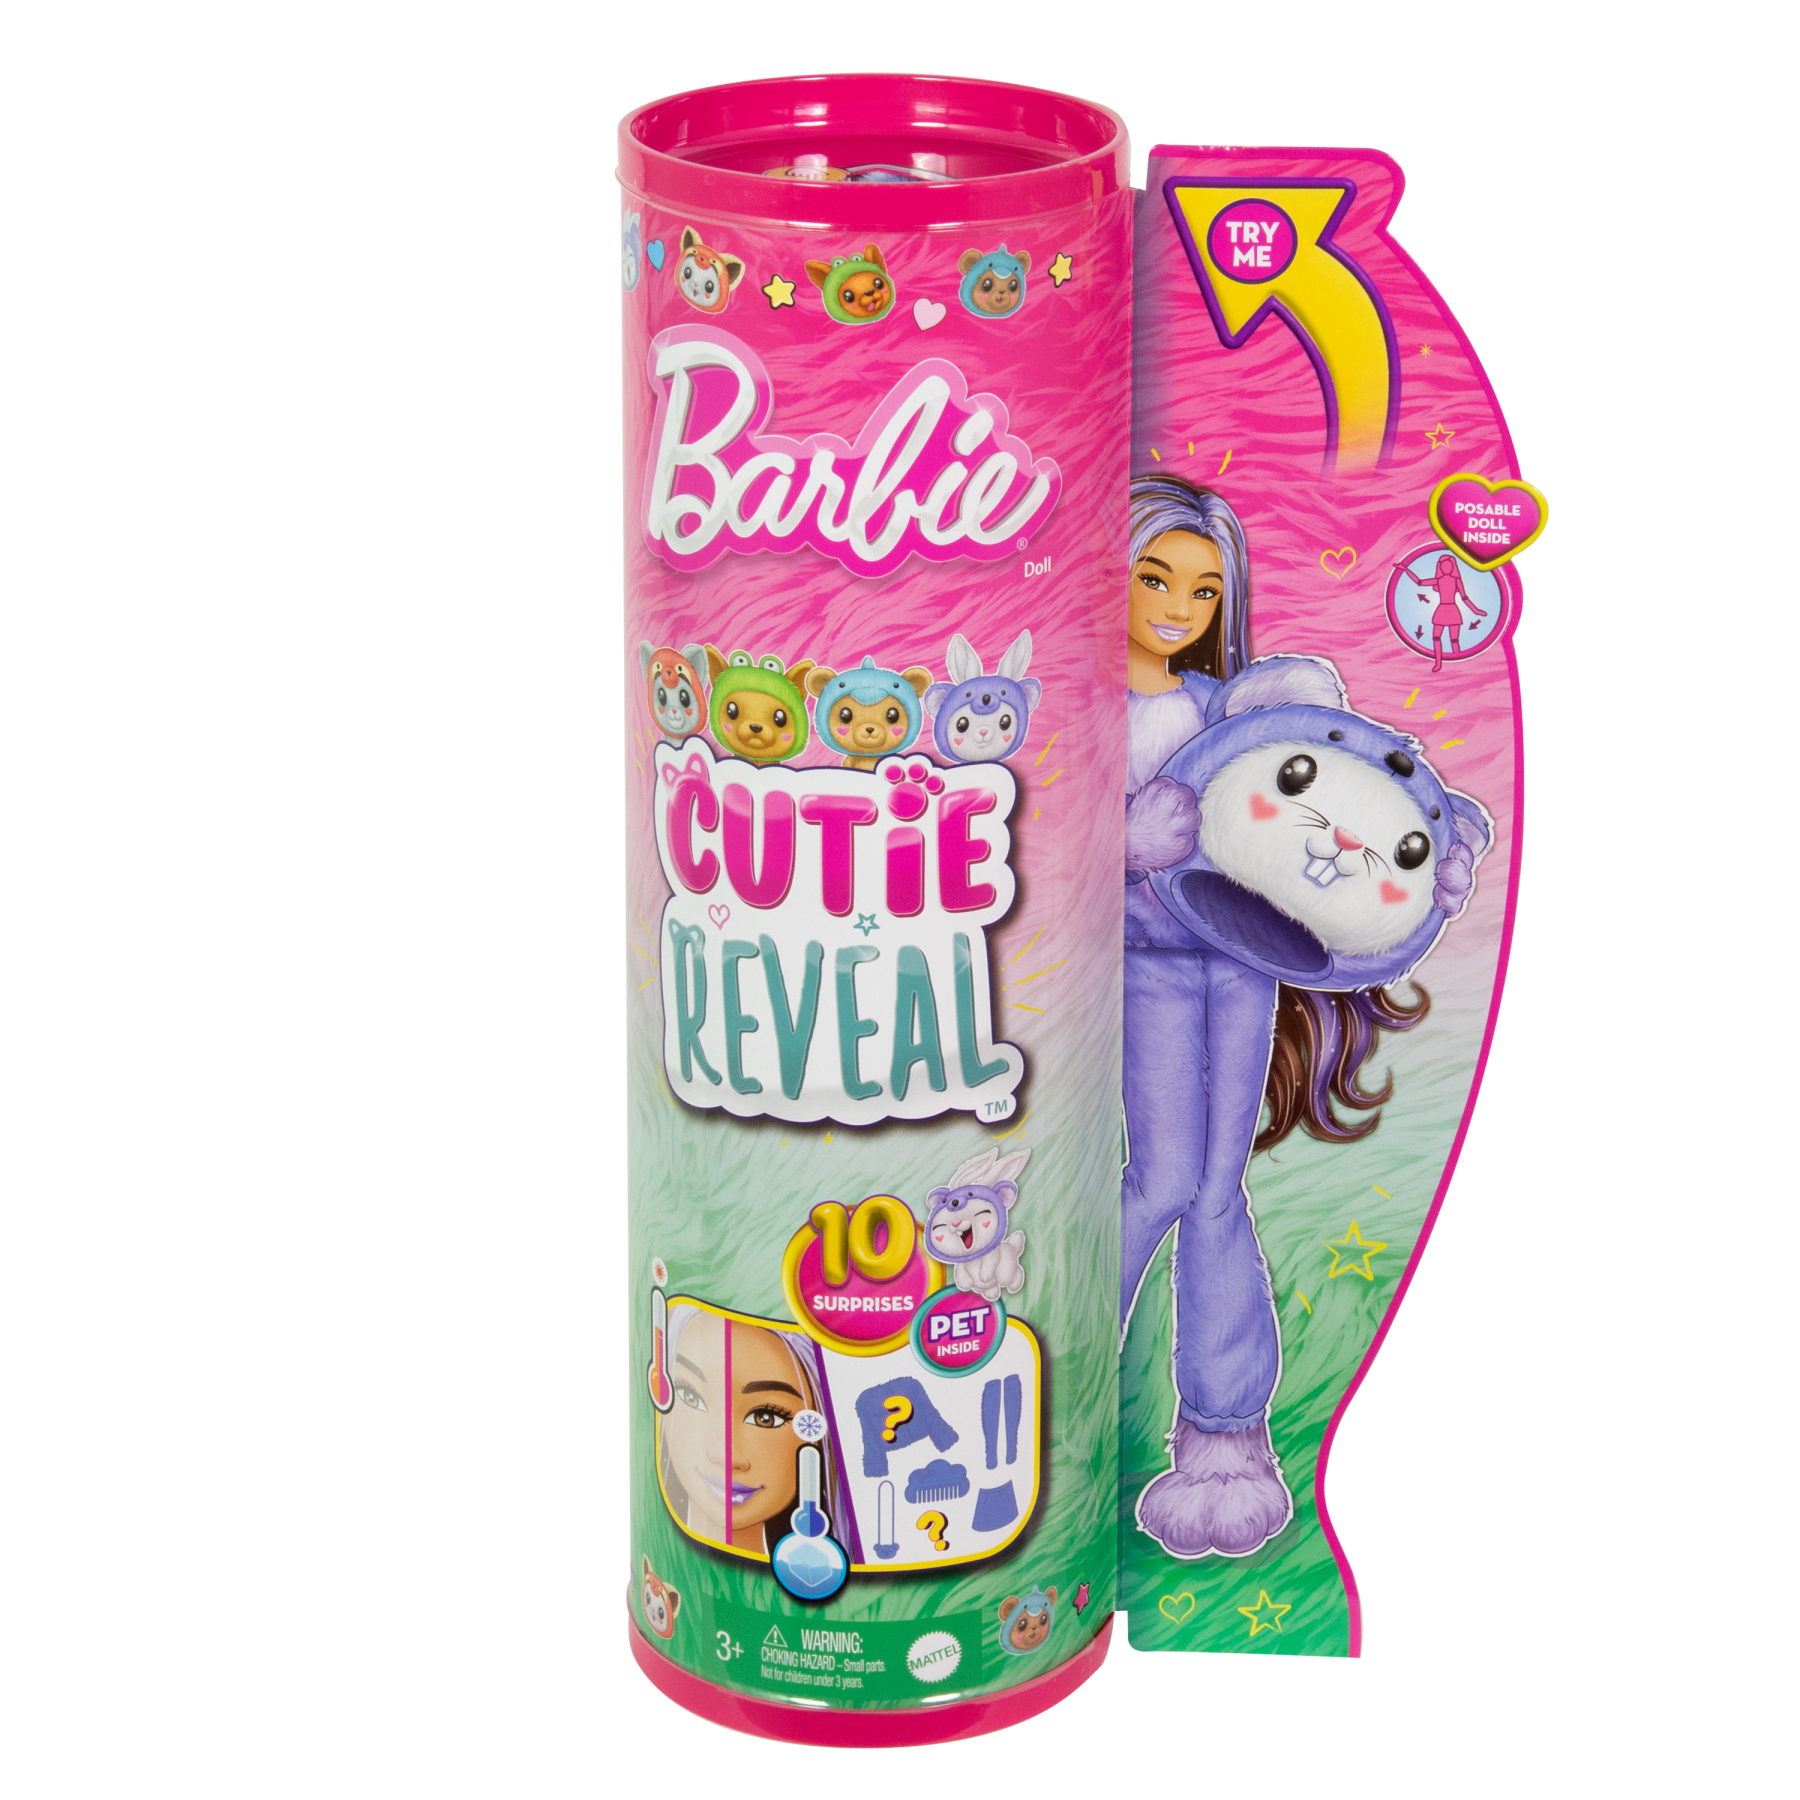 Barbie cutie reveal - bambola con costume di peluche da coniglietto-koala e 10 accessori a sorpresa cambia colore, serie amici cuccioli - Barbie